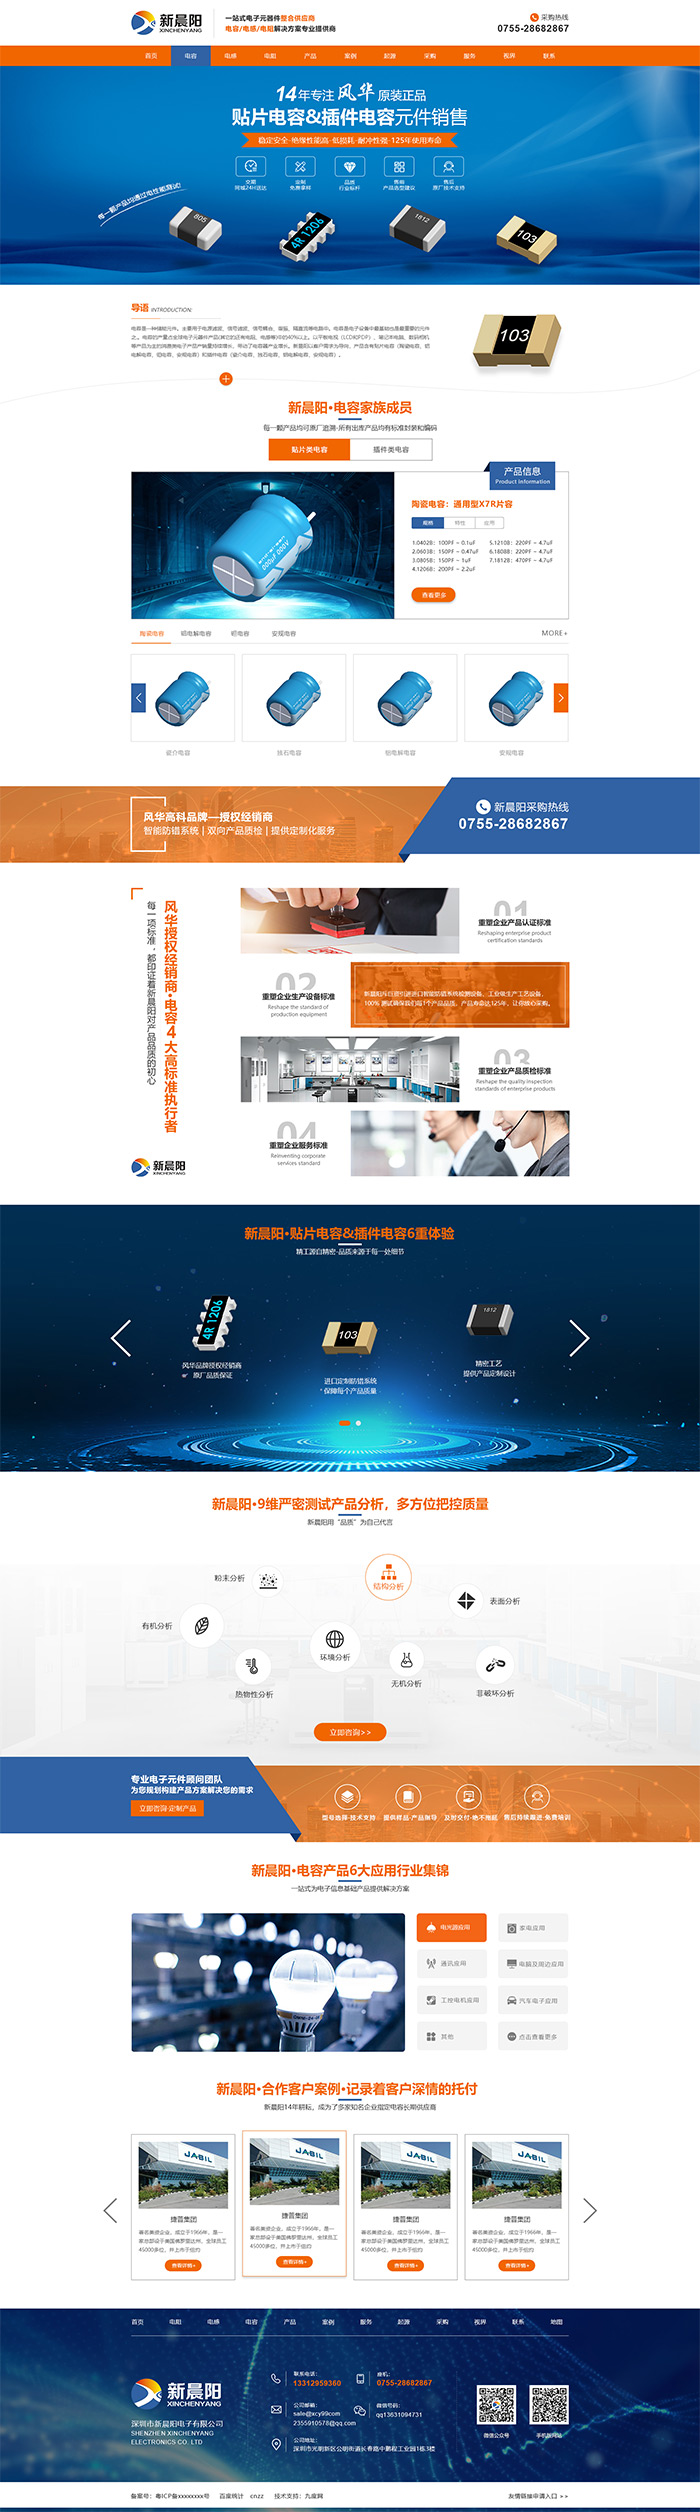 深圳市新晨阳电子有限公司品牌型网站设计项目